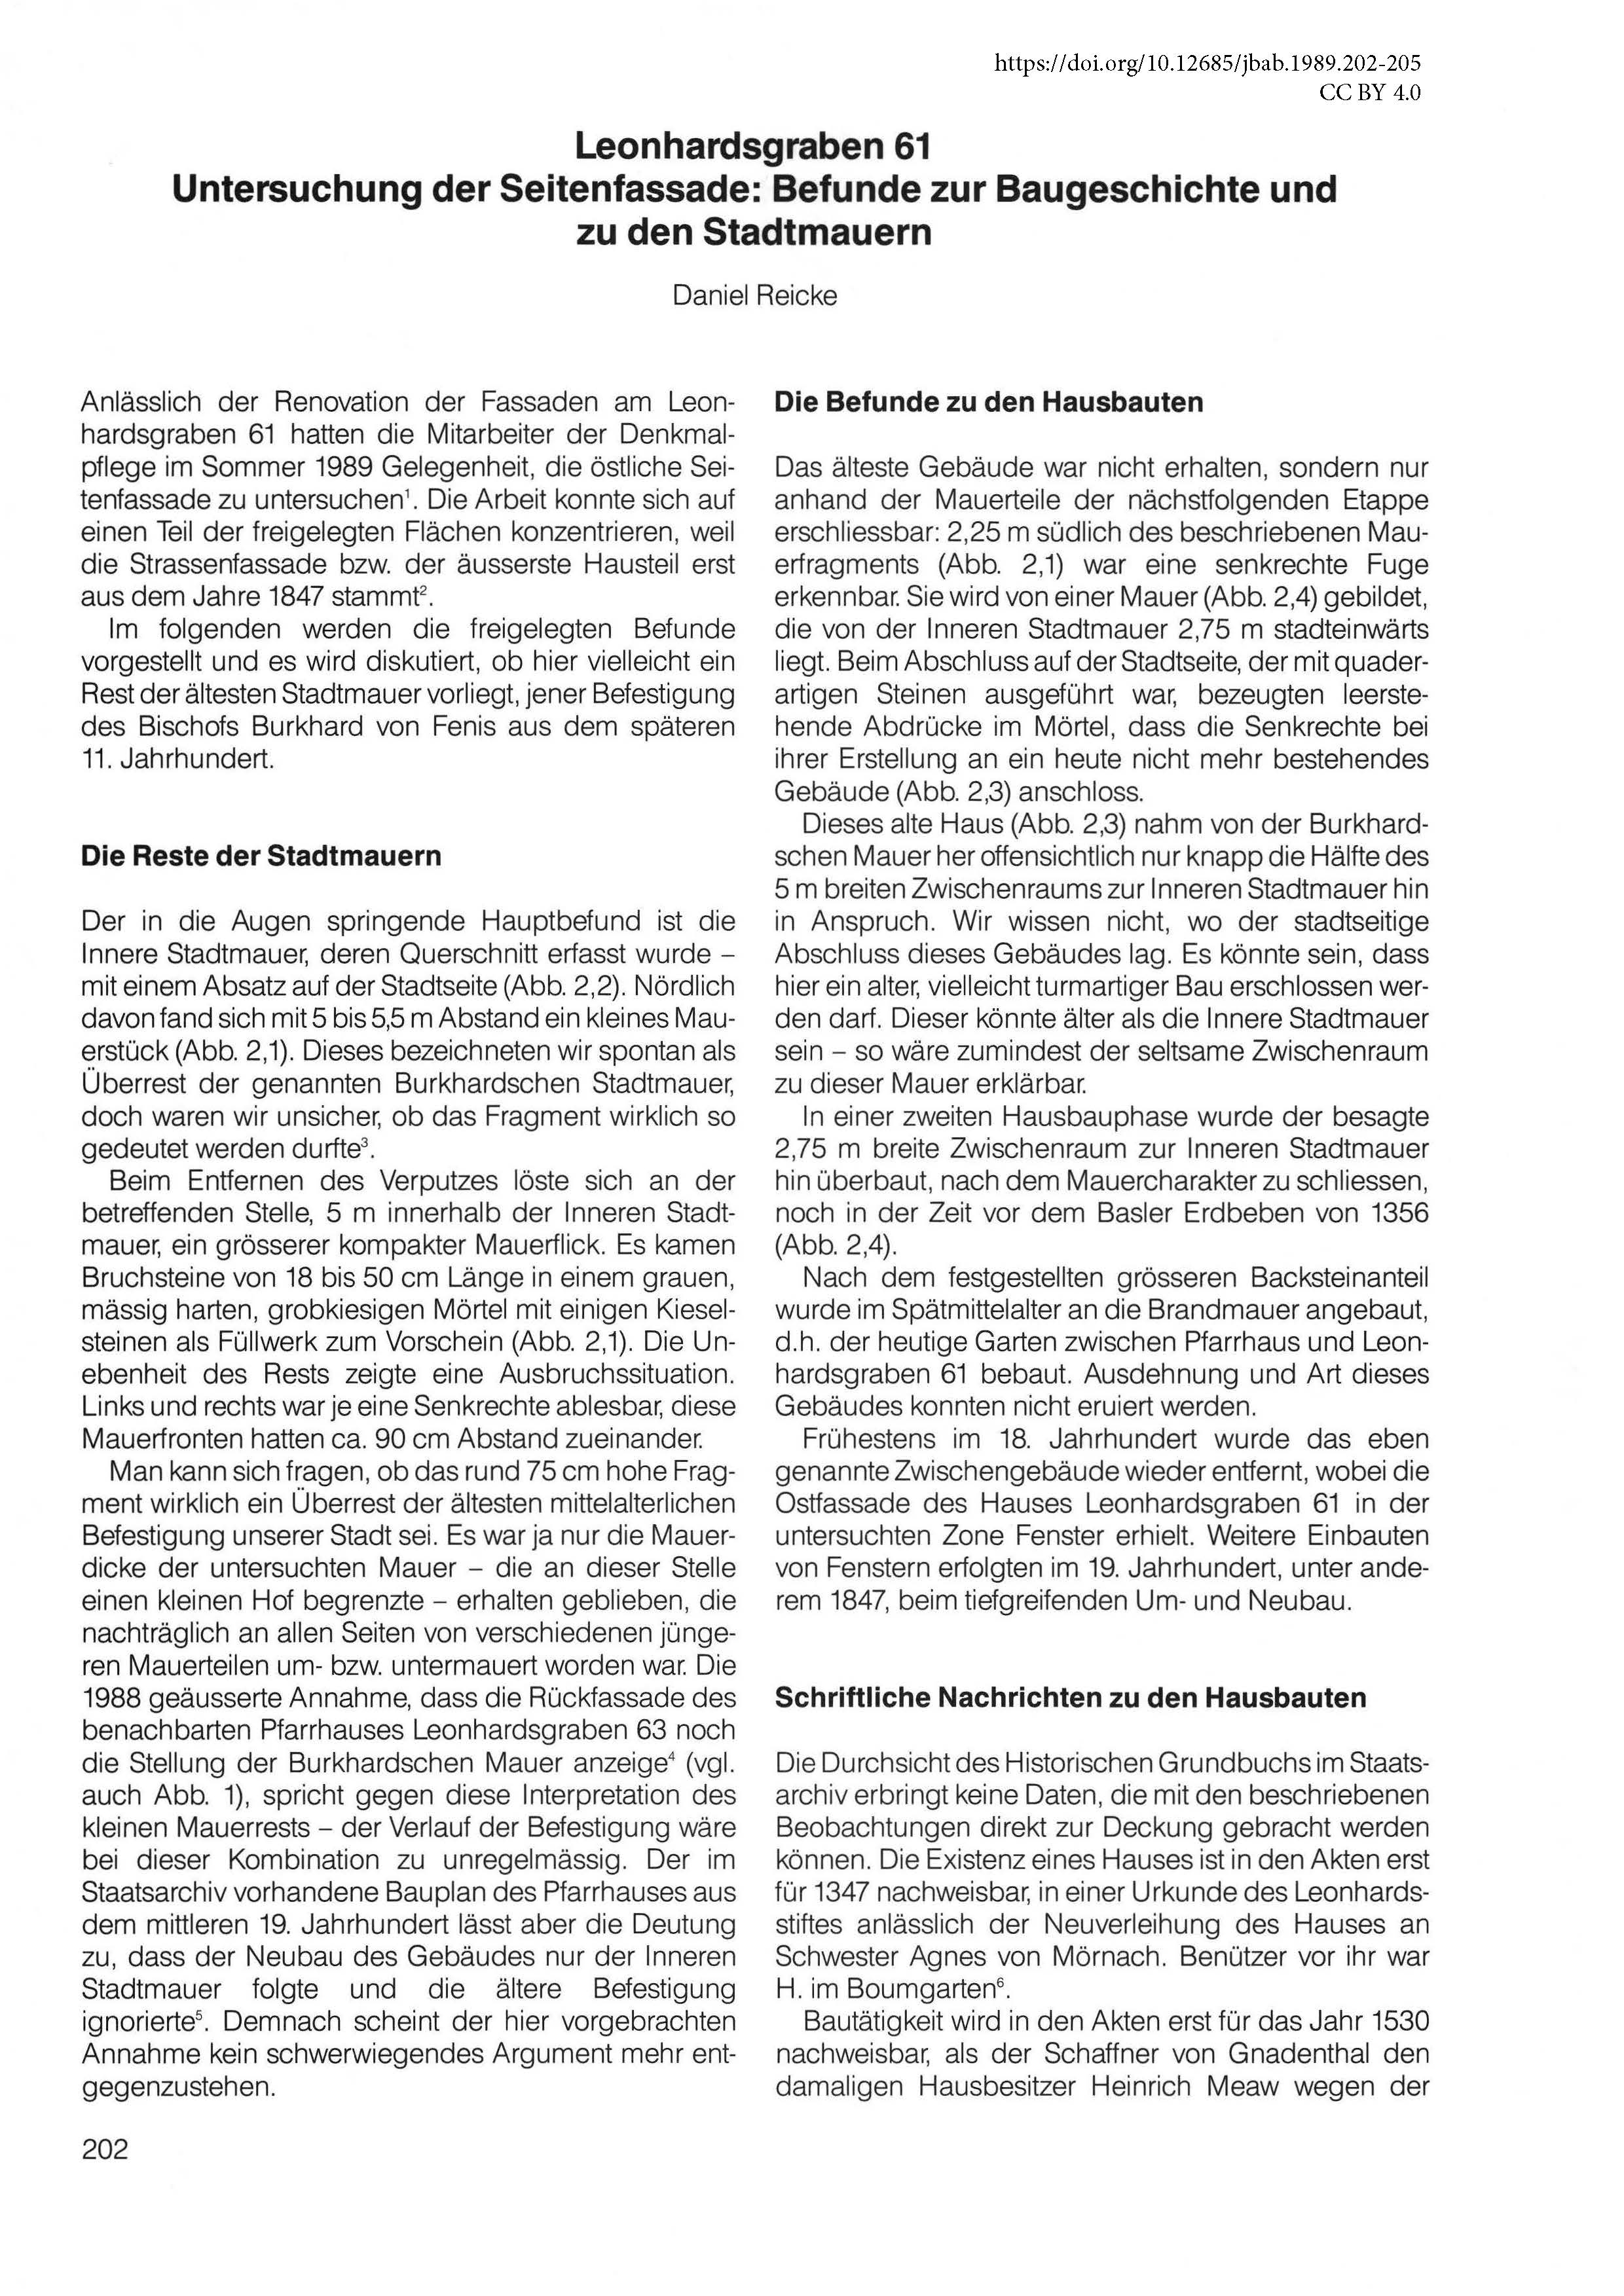 Erste Seite des Artikels über die Befunde am Leonhardsgraben 61